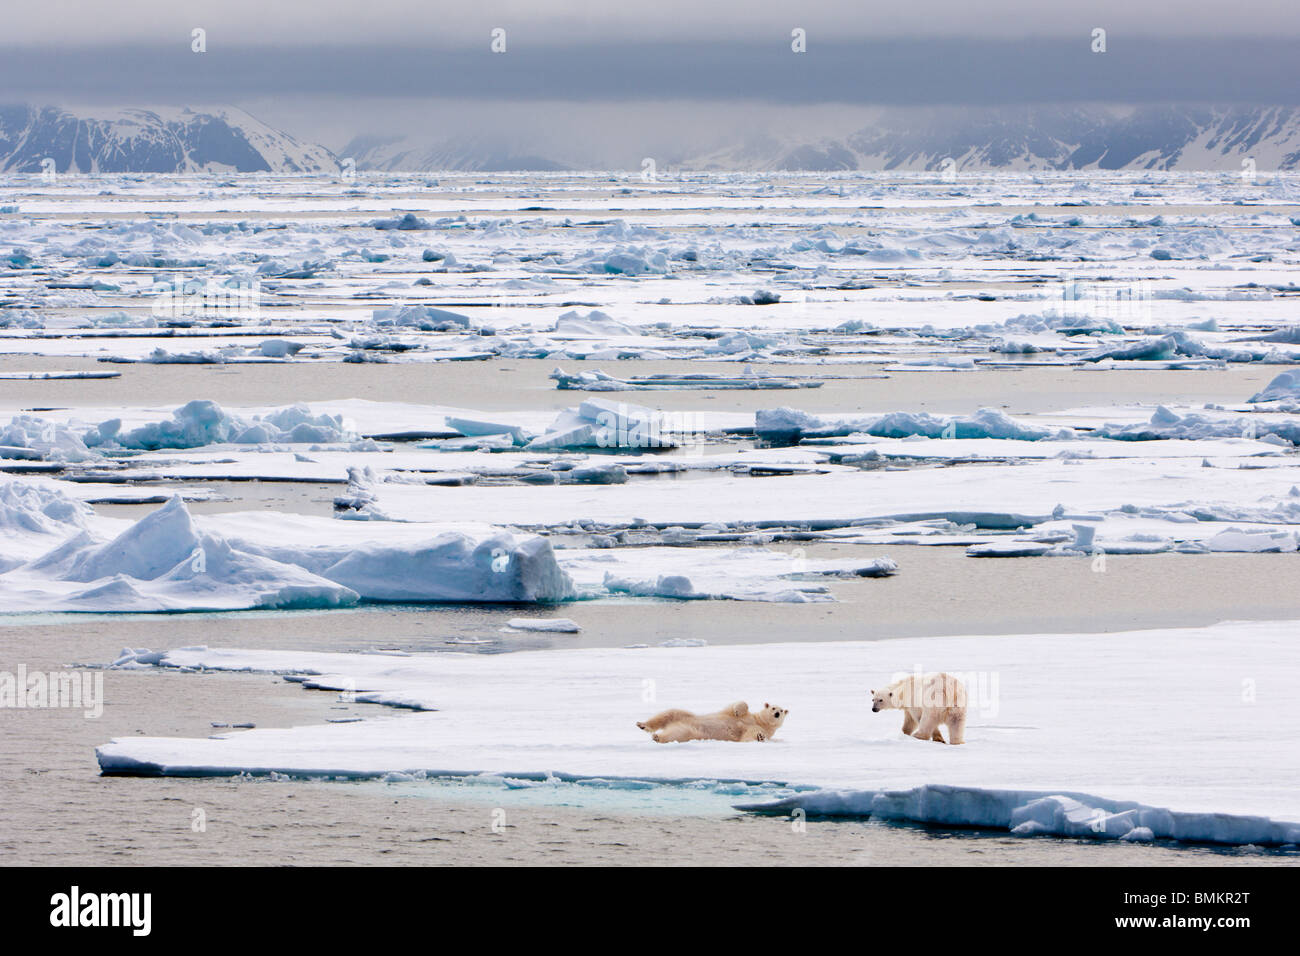 Los osos polares en la banquisa, Woodfjorden, norte ártico Svalbard, Spitsbergen, Noruega. Foto de stock